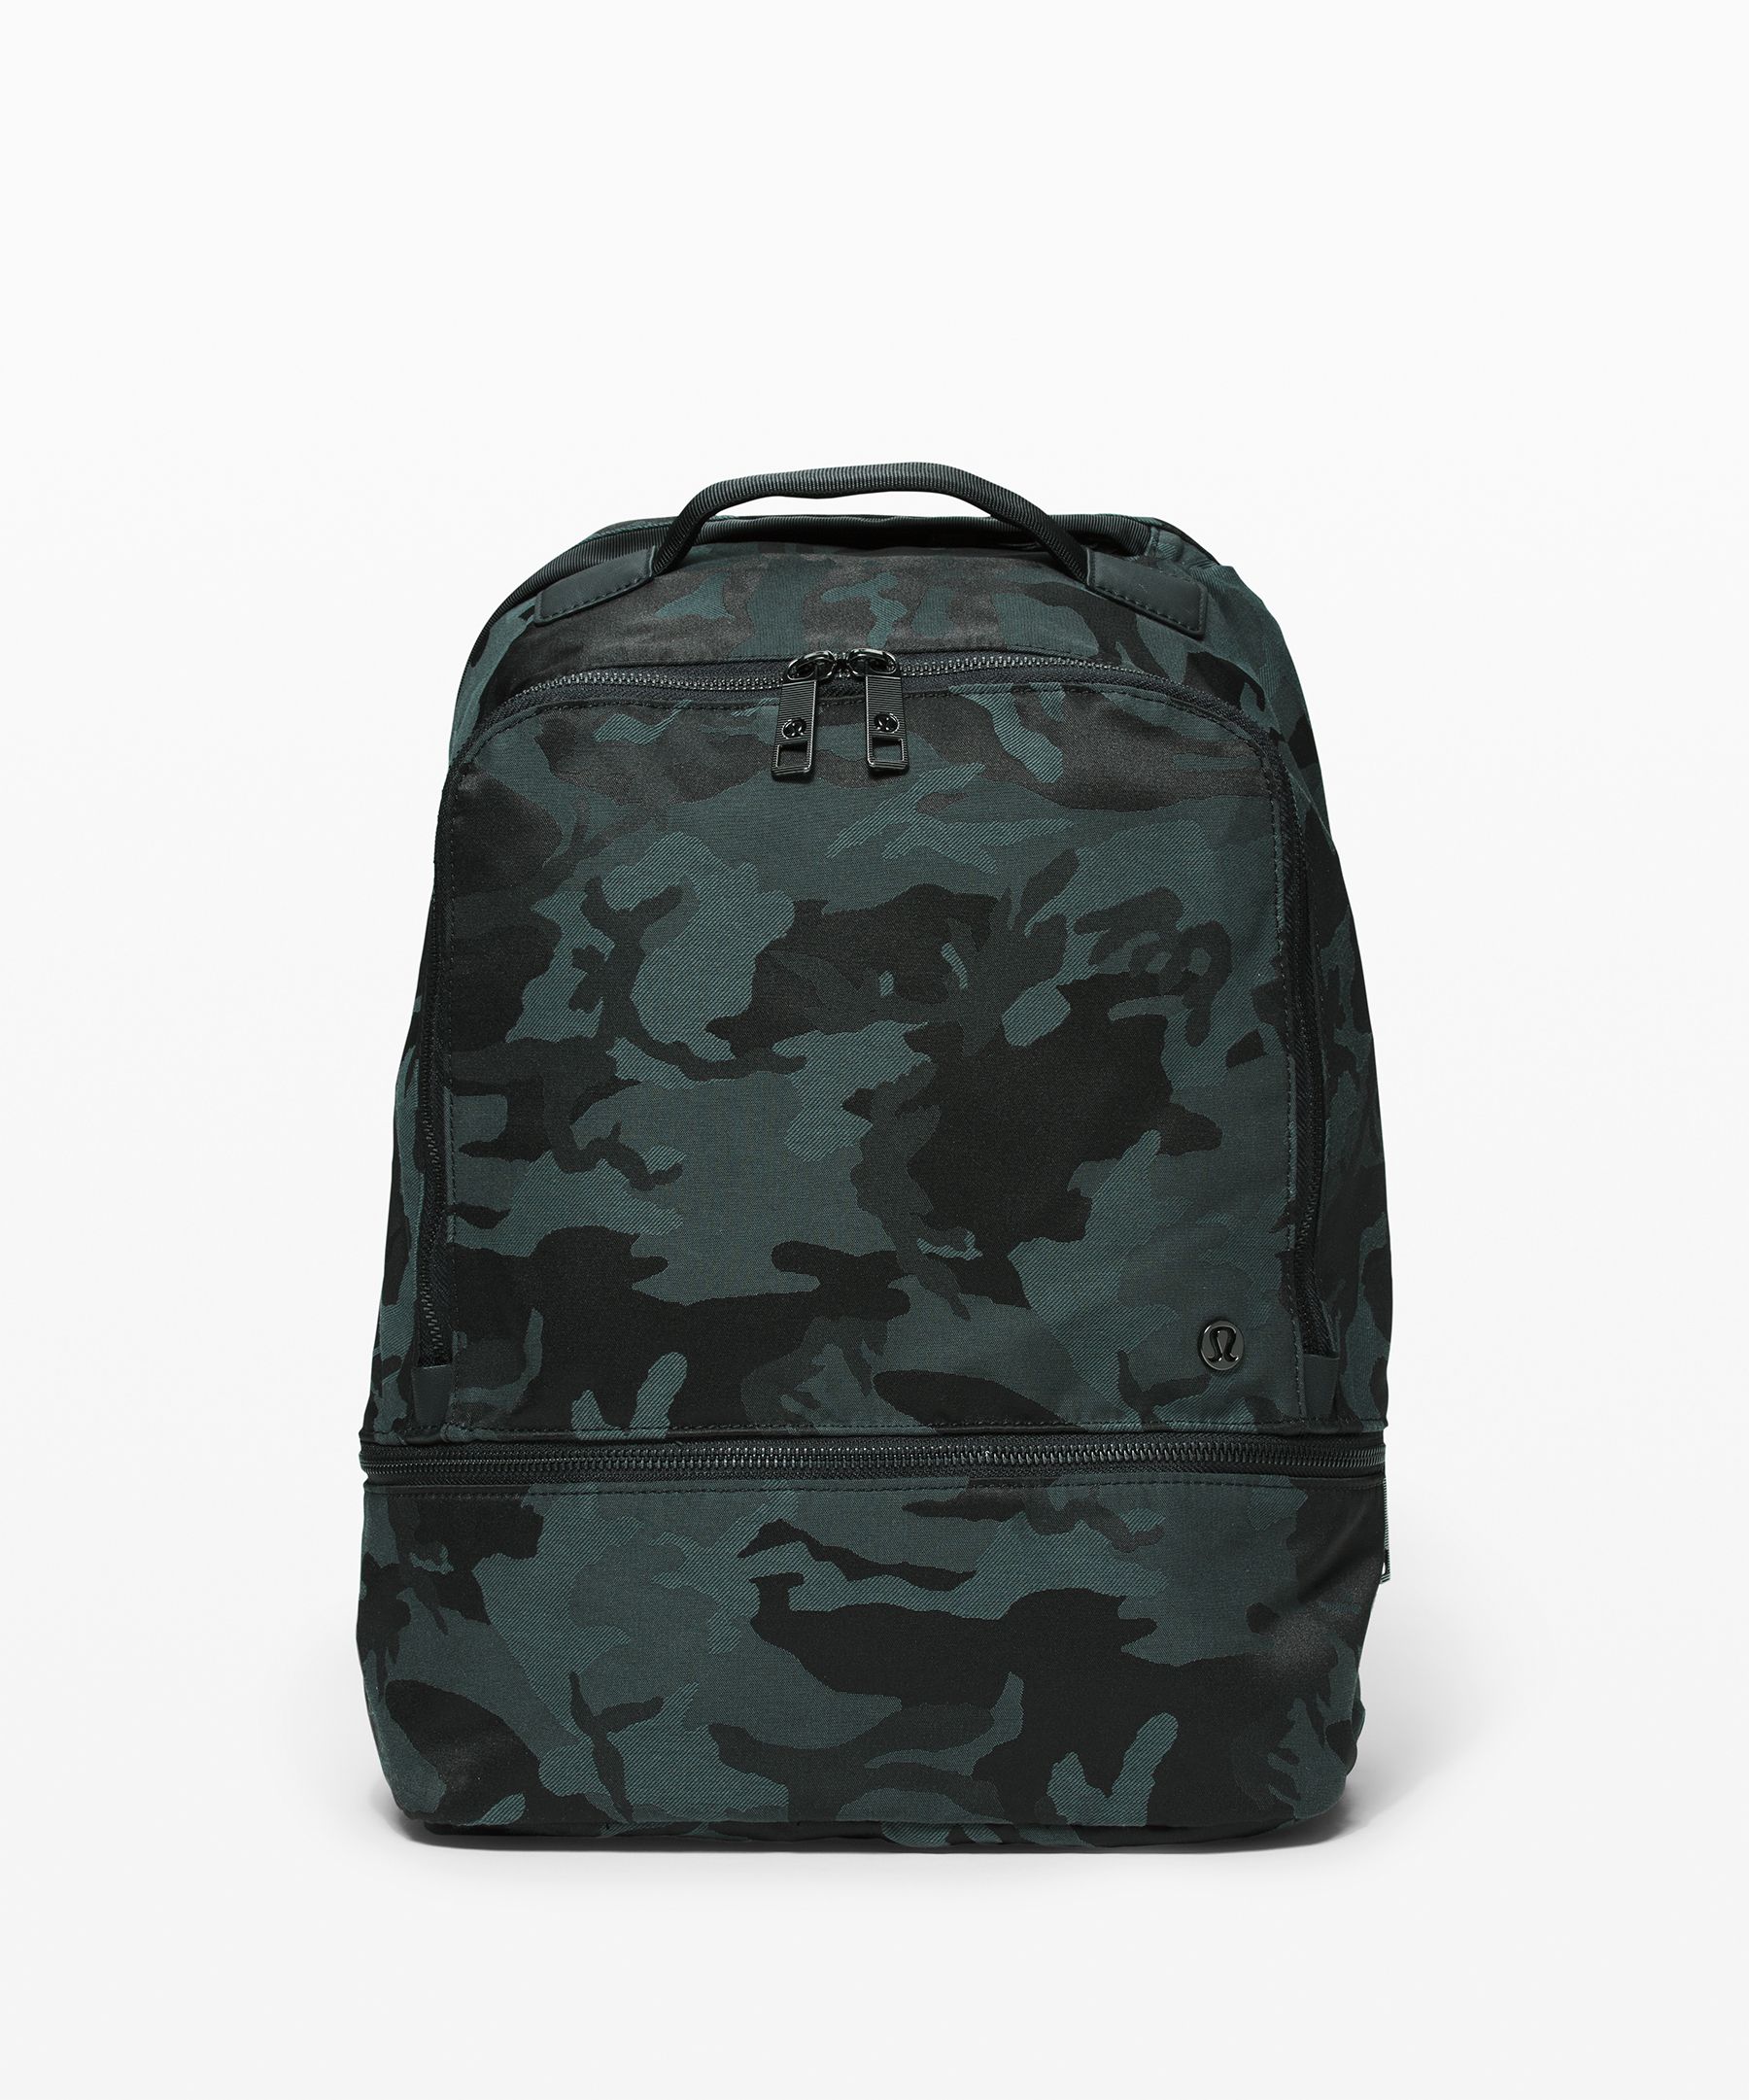 Lululemon City Adventurer Backpack *17l In Jacquard Camo Cotton Obsidian/black